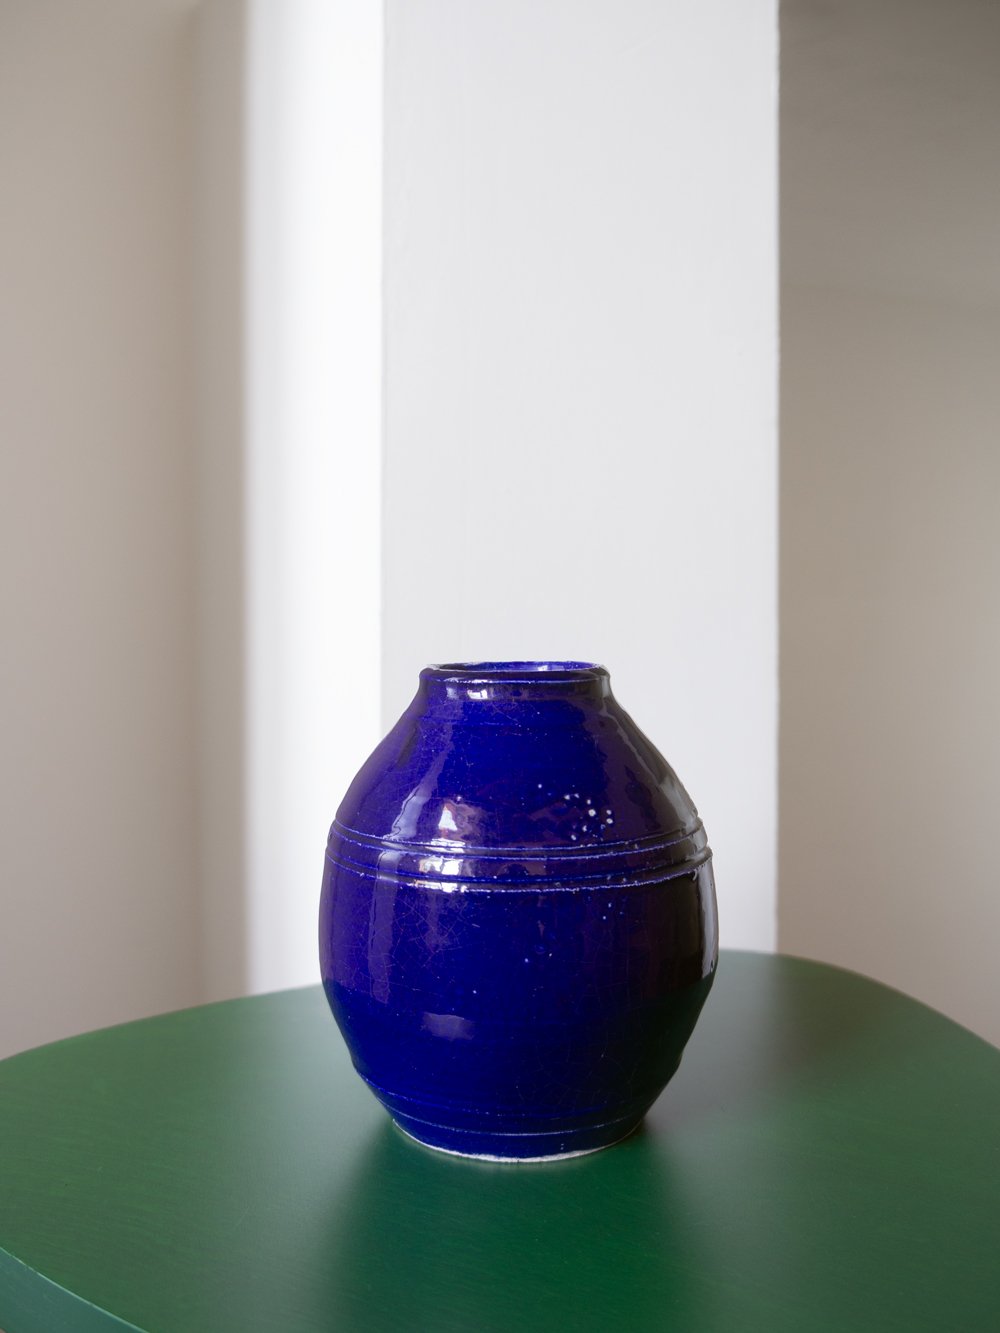 Image of blue vase